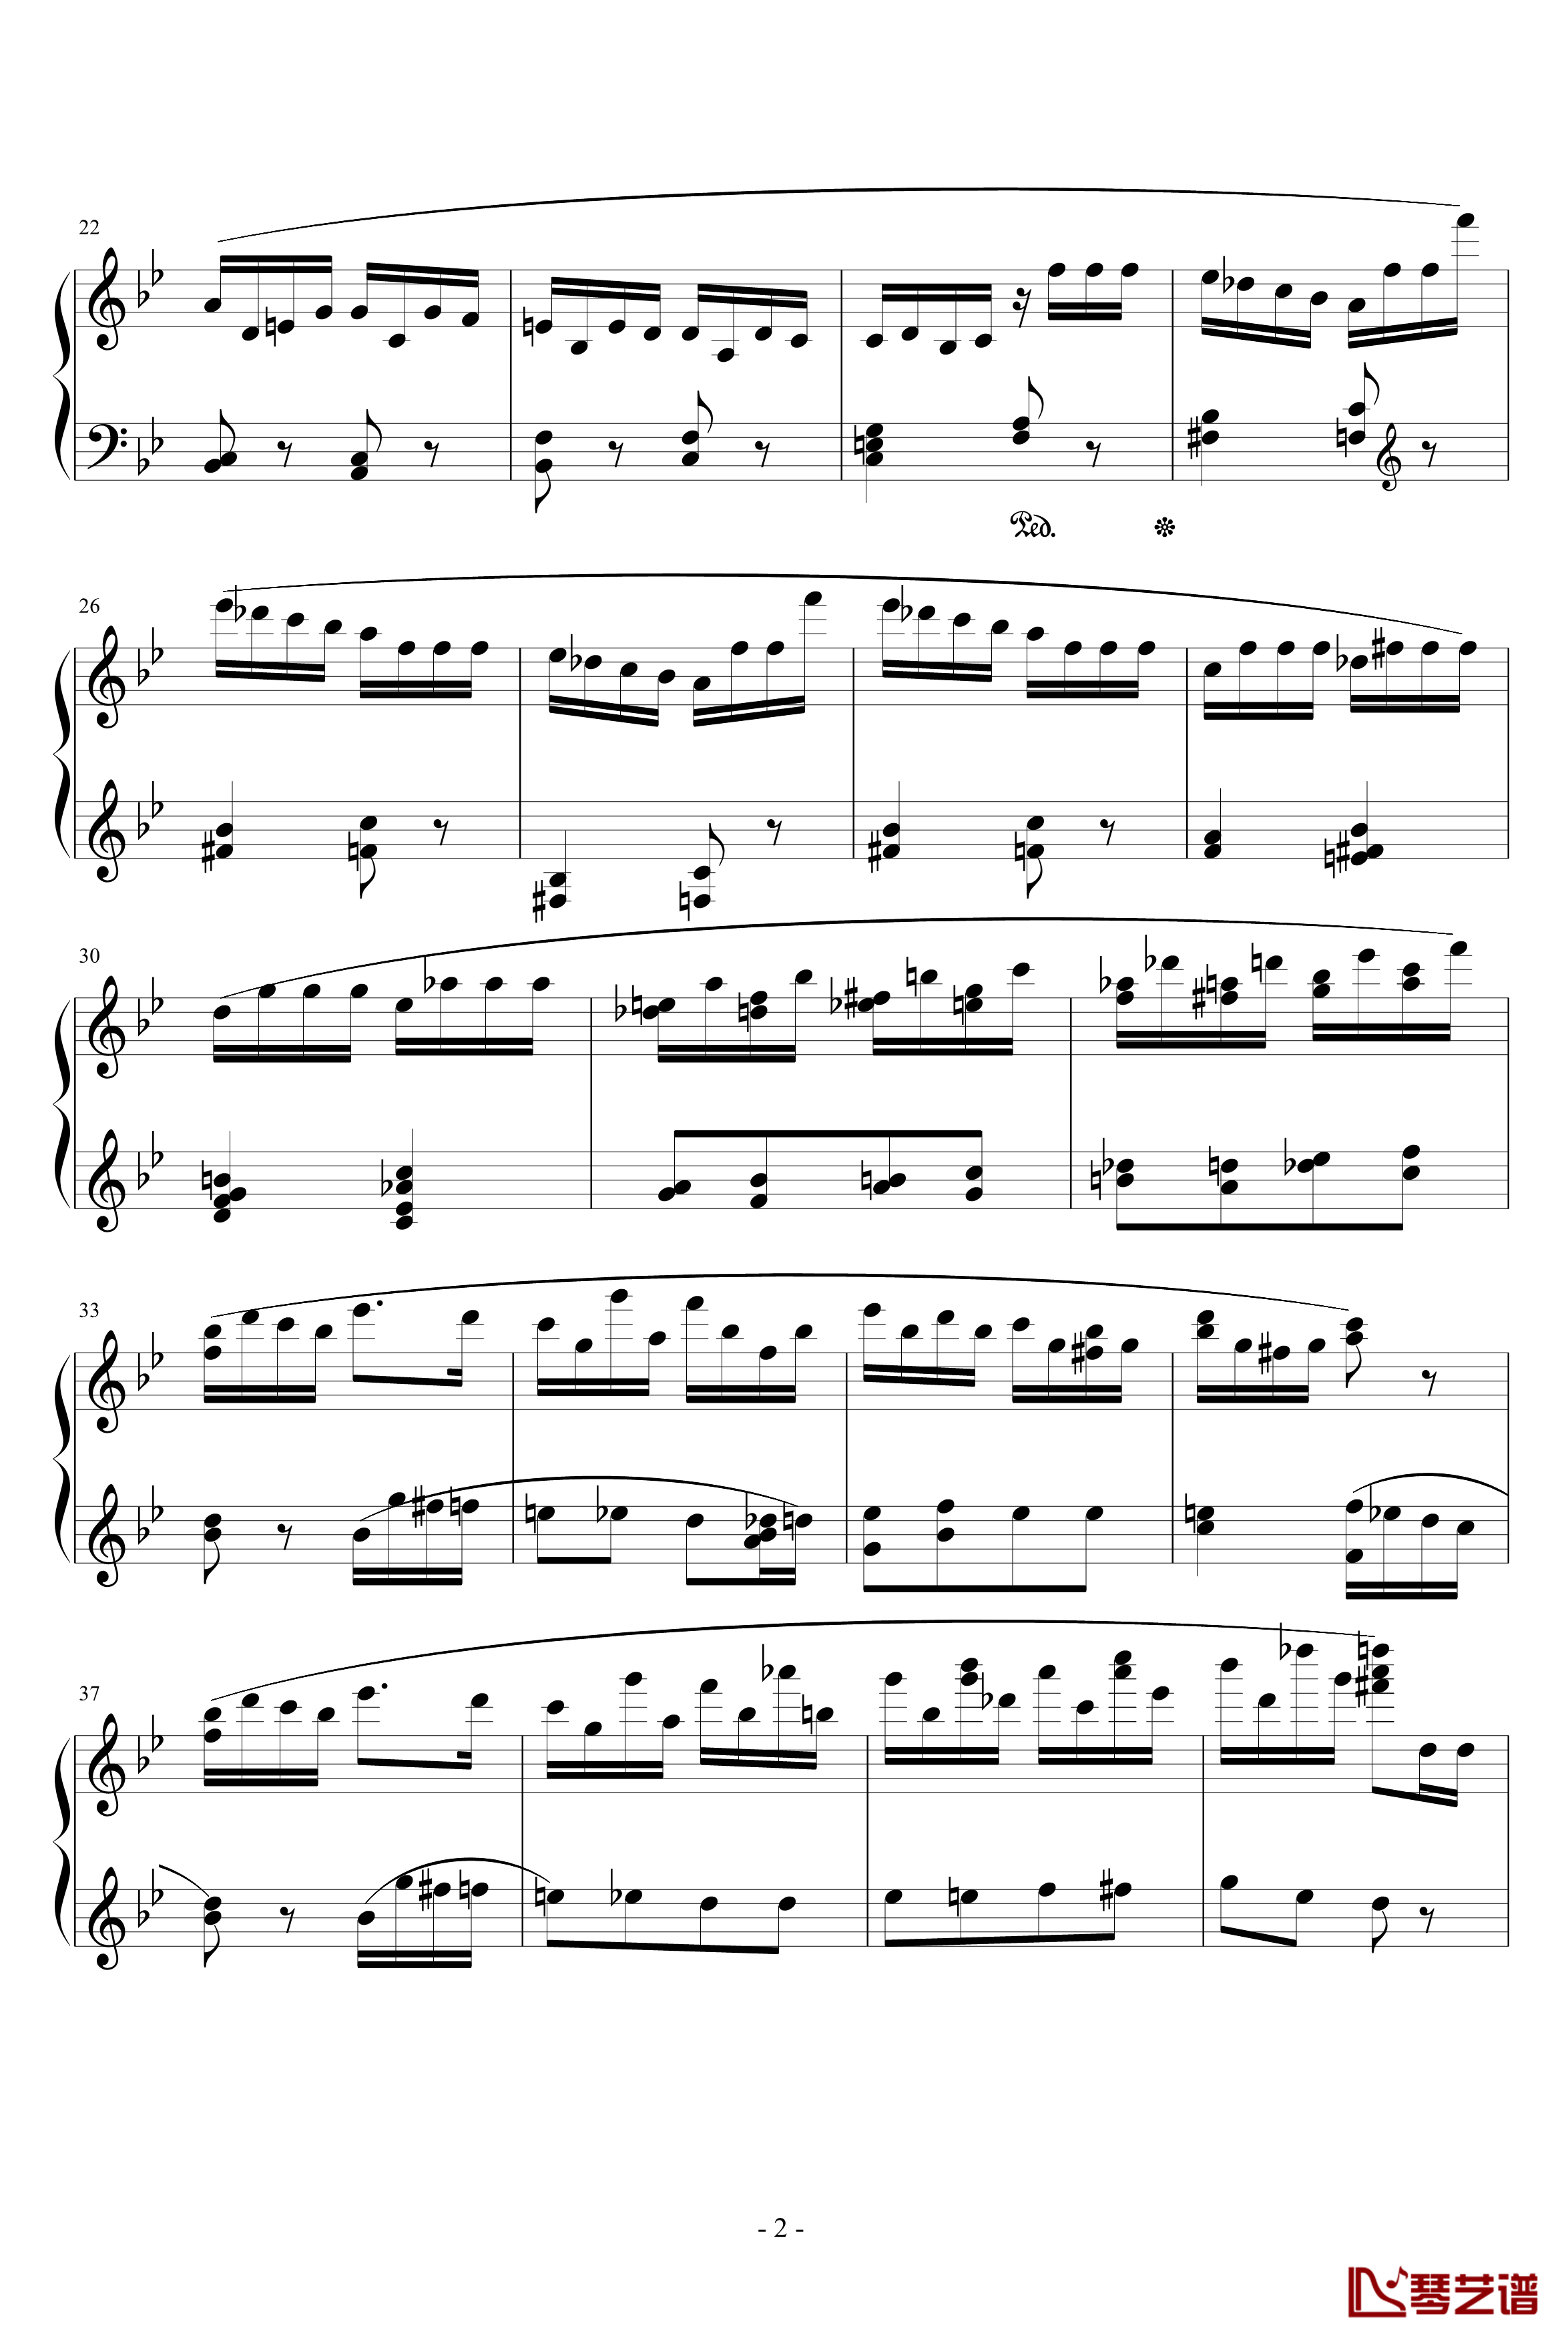 胡桃夹子序曲钢琴谱-柴科夫斯基-Peter Ilyich Tchaikovsky